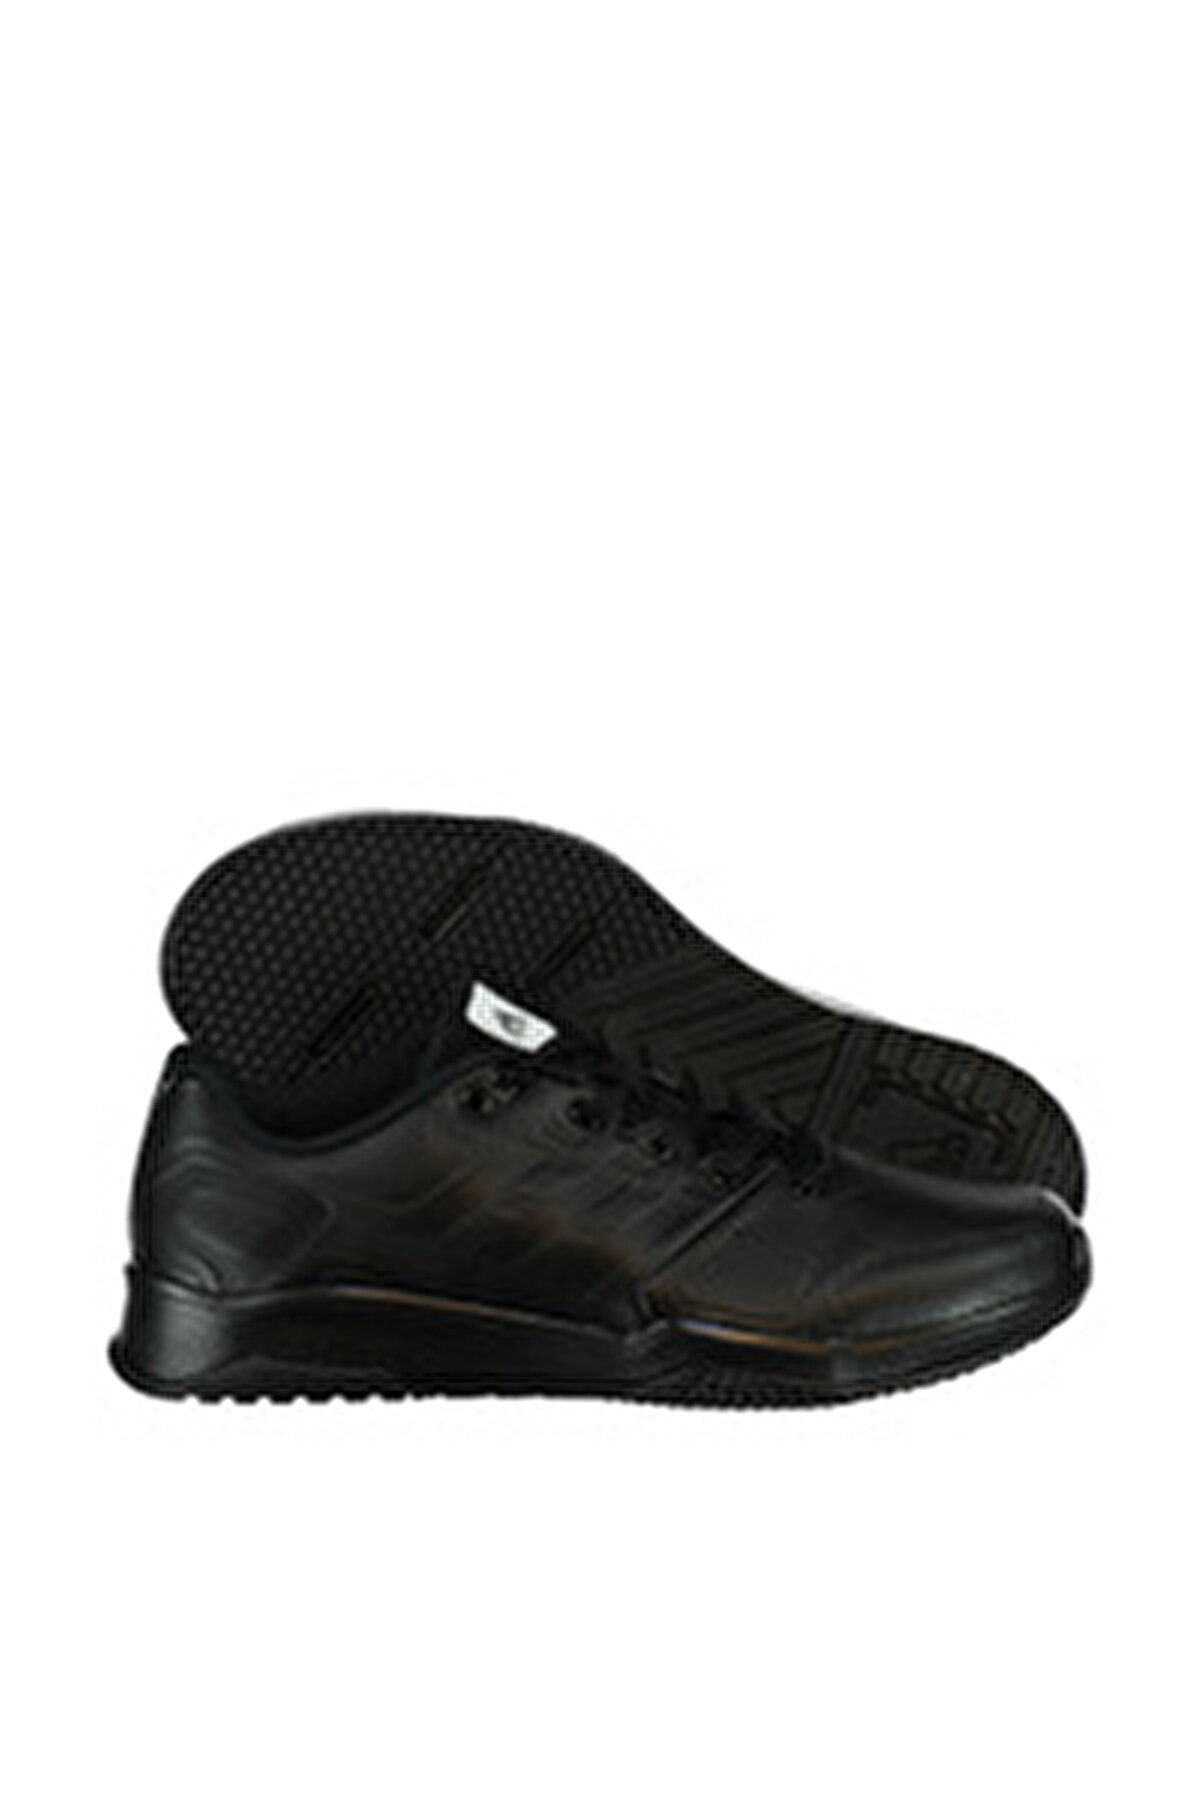 adidas Erkek Koşu & Antrenman Ayakkabısı - Duramo 8 Lea - BB1754